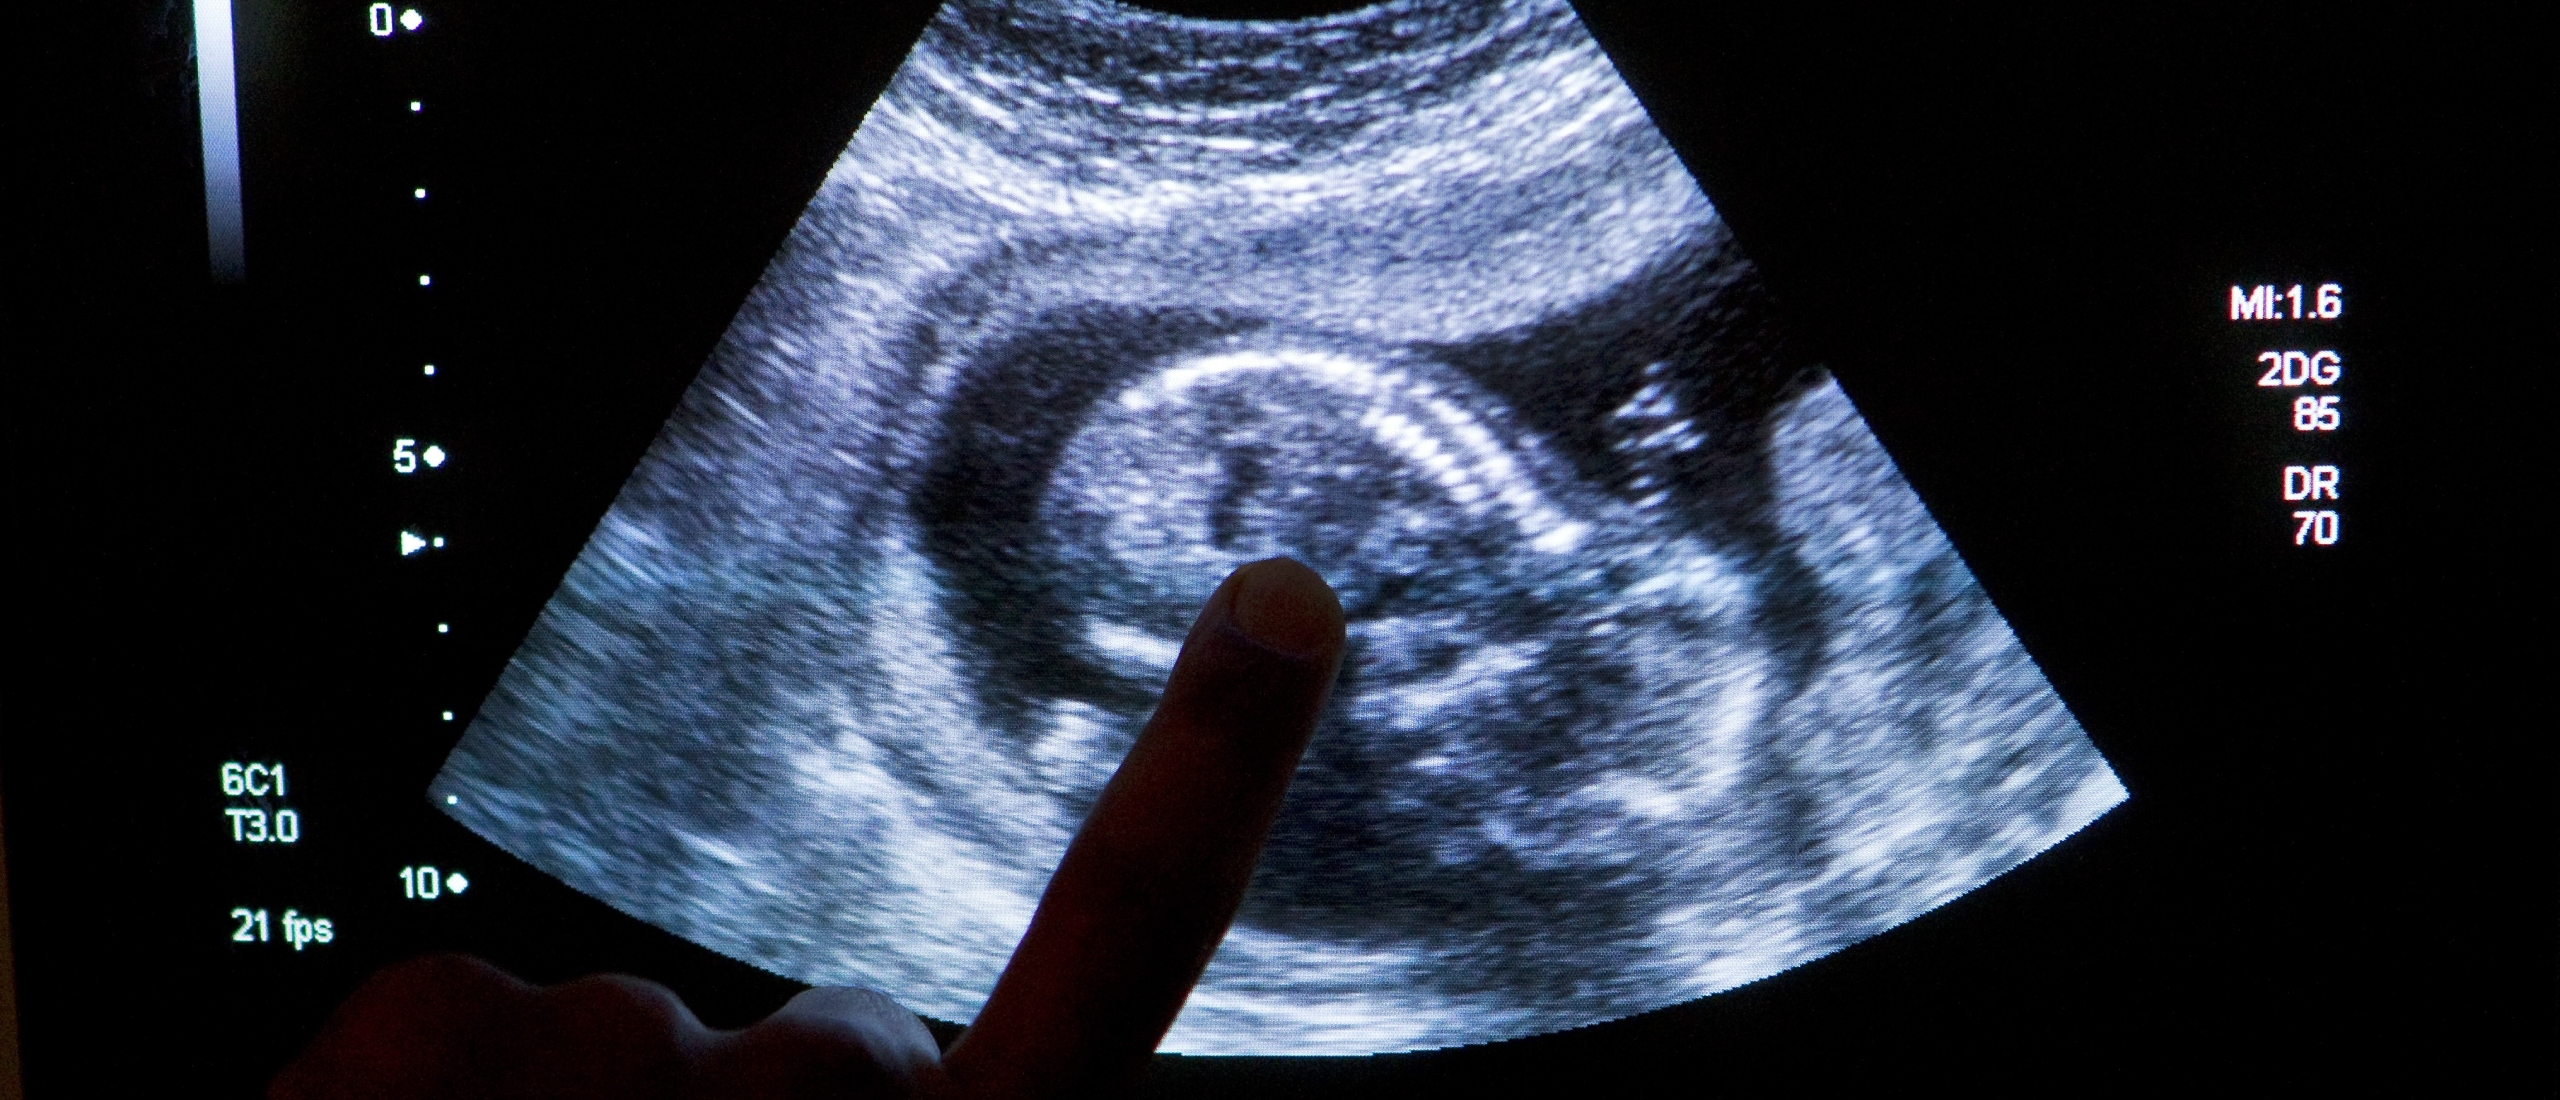 Rechtsfilosoof: fundamenteel debat nodig over embryo-onderzoek